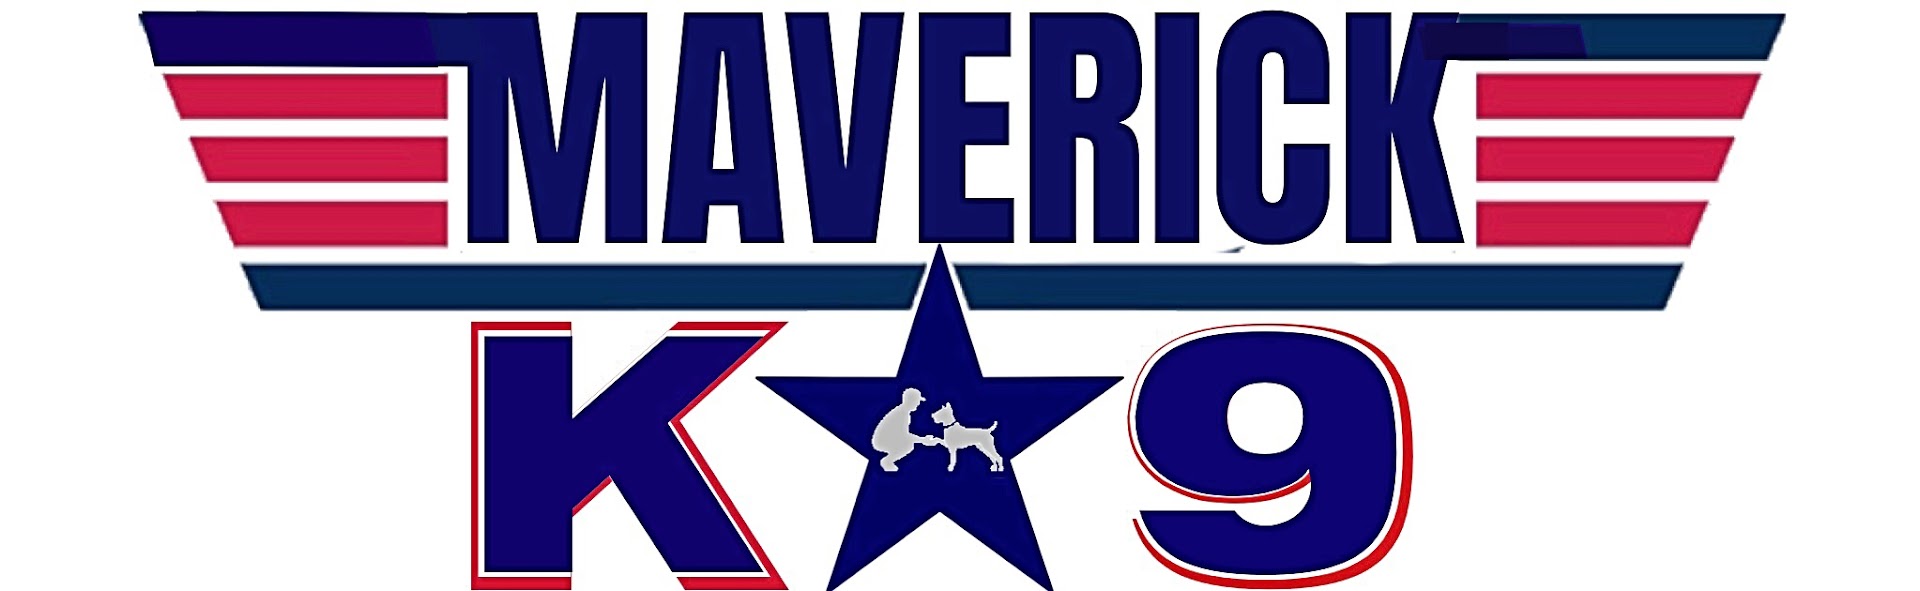 Maverick K9 LLC